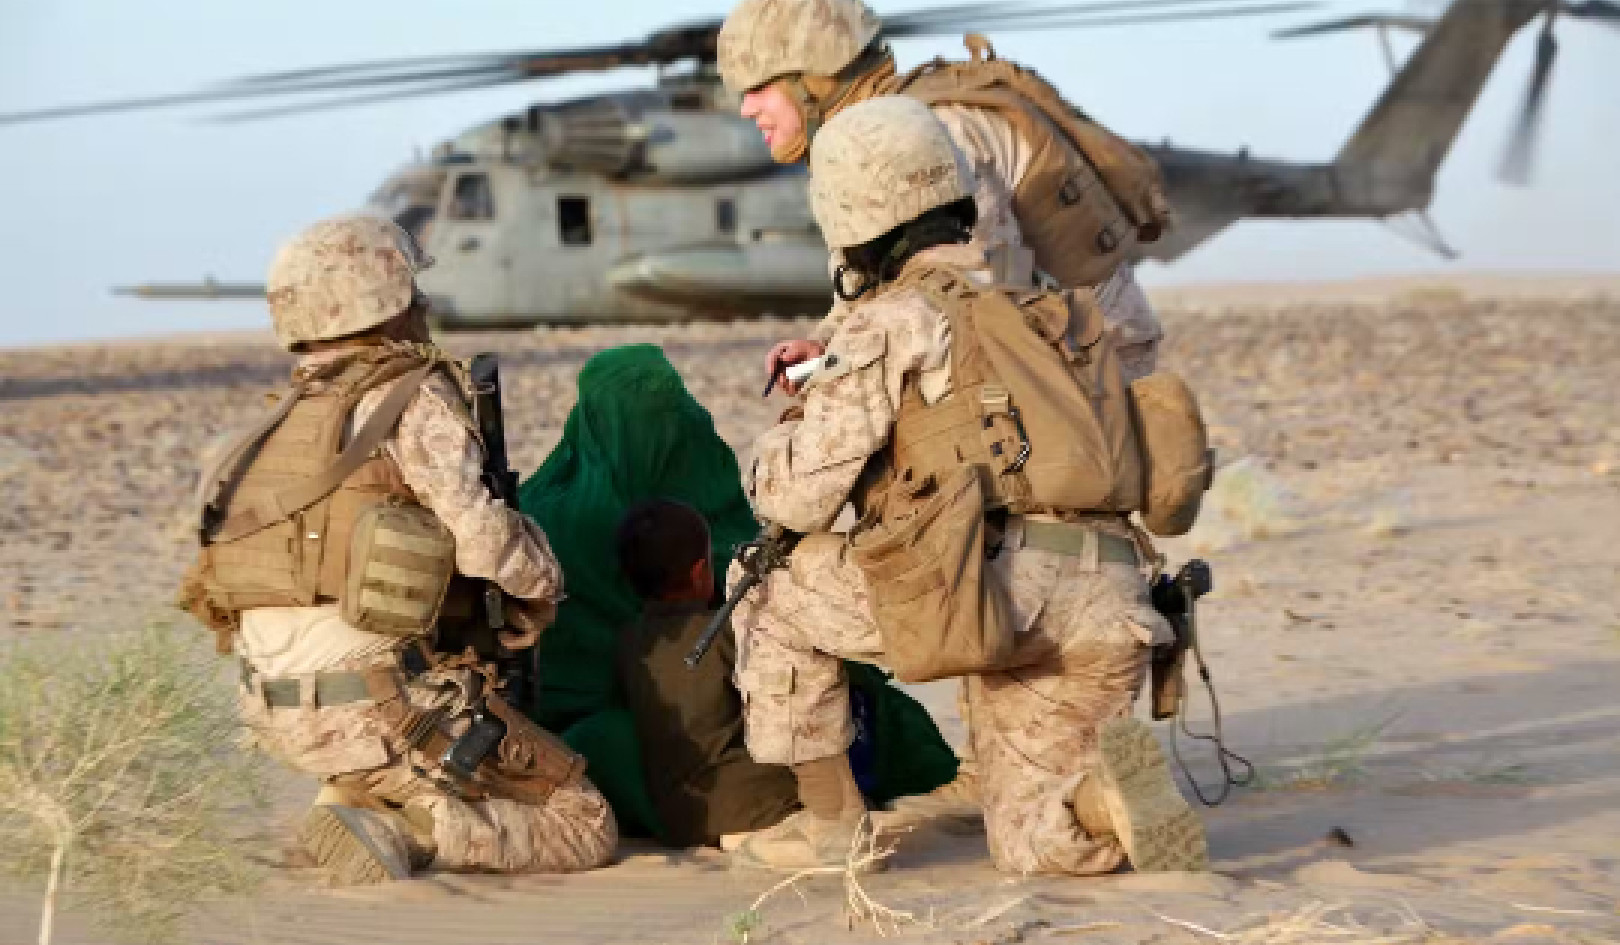 Η εσωτερική ιστορία του πώς ο στρατός των ΗΠΑ έστειλε γυναίκες στρατιώτες σε μυστικές αποστολές μάχης στο Αφγανιστάν